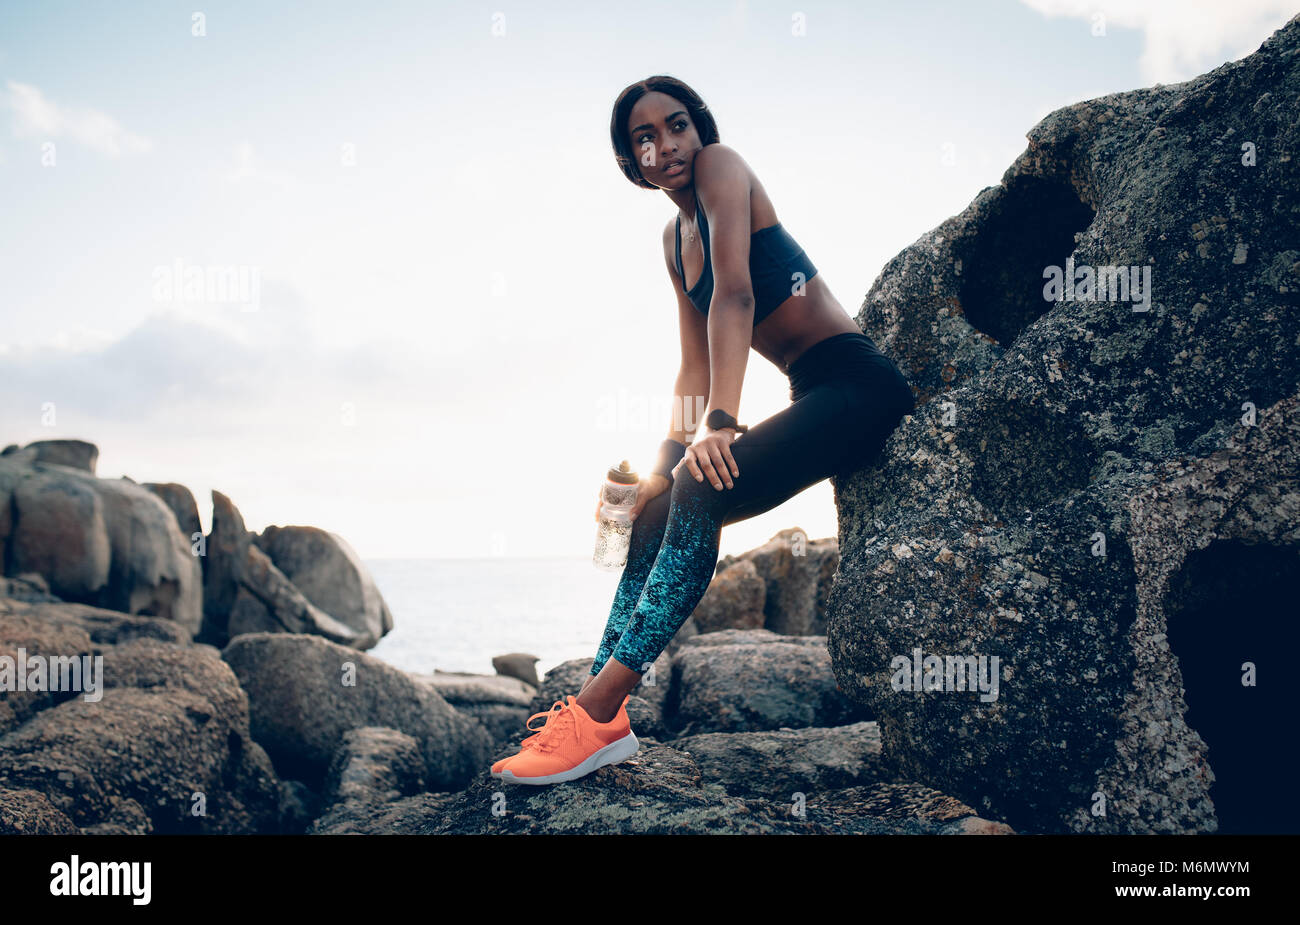 Fitness Frau mit einer Flasche Wasser ruhen über einen Felsen. Weibchen mit schlanken Körper Entspannung nach dem Training im Freien. Stockfoto